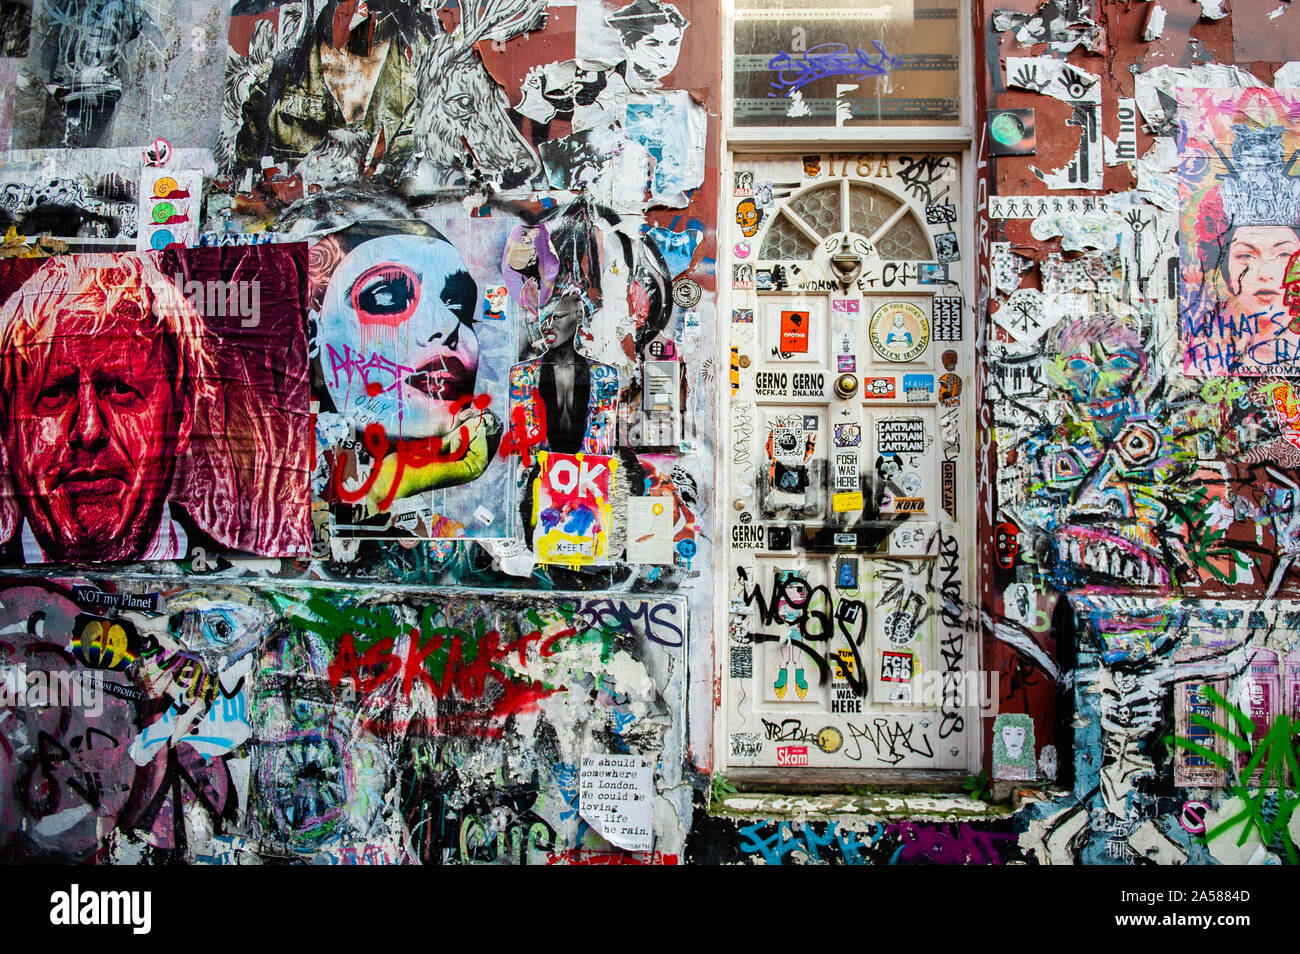 Un mur est recouvert d'art.comme l'Anti Brexit Brexit date limite à l'horizon, les peintures murales et collez-bonus apparaissent sur les rues de Londres. Brick Lane, dans l'East End londonien, est un des endroits les plus populaires pour trouver toutes sortes d'art autour du Brexit. Aussi dans le célèbre quartier de Shoreditch, les touristes à pied et prendre des photos autour de cette rue politique art. Banque D'Images